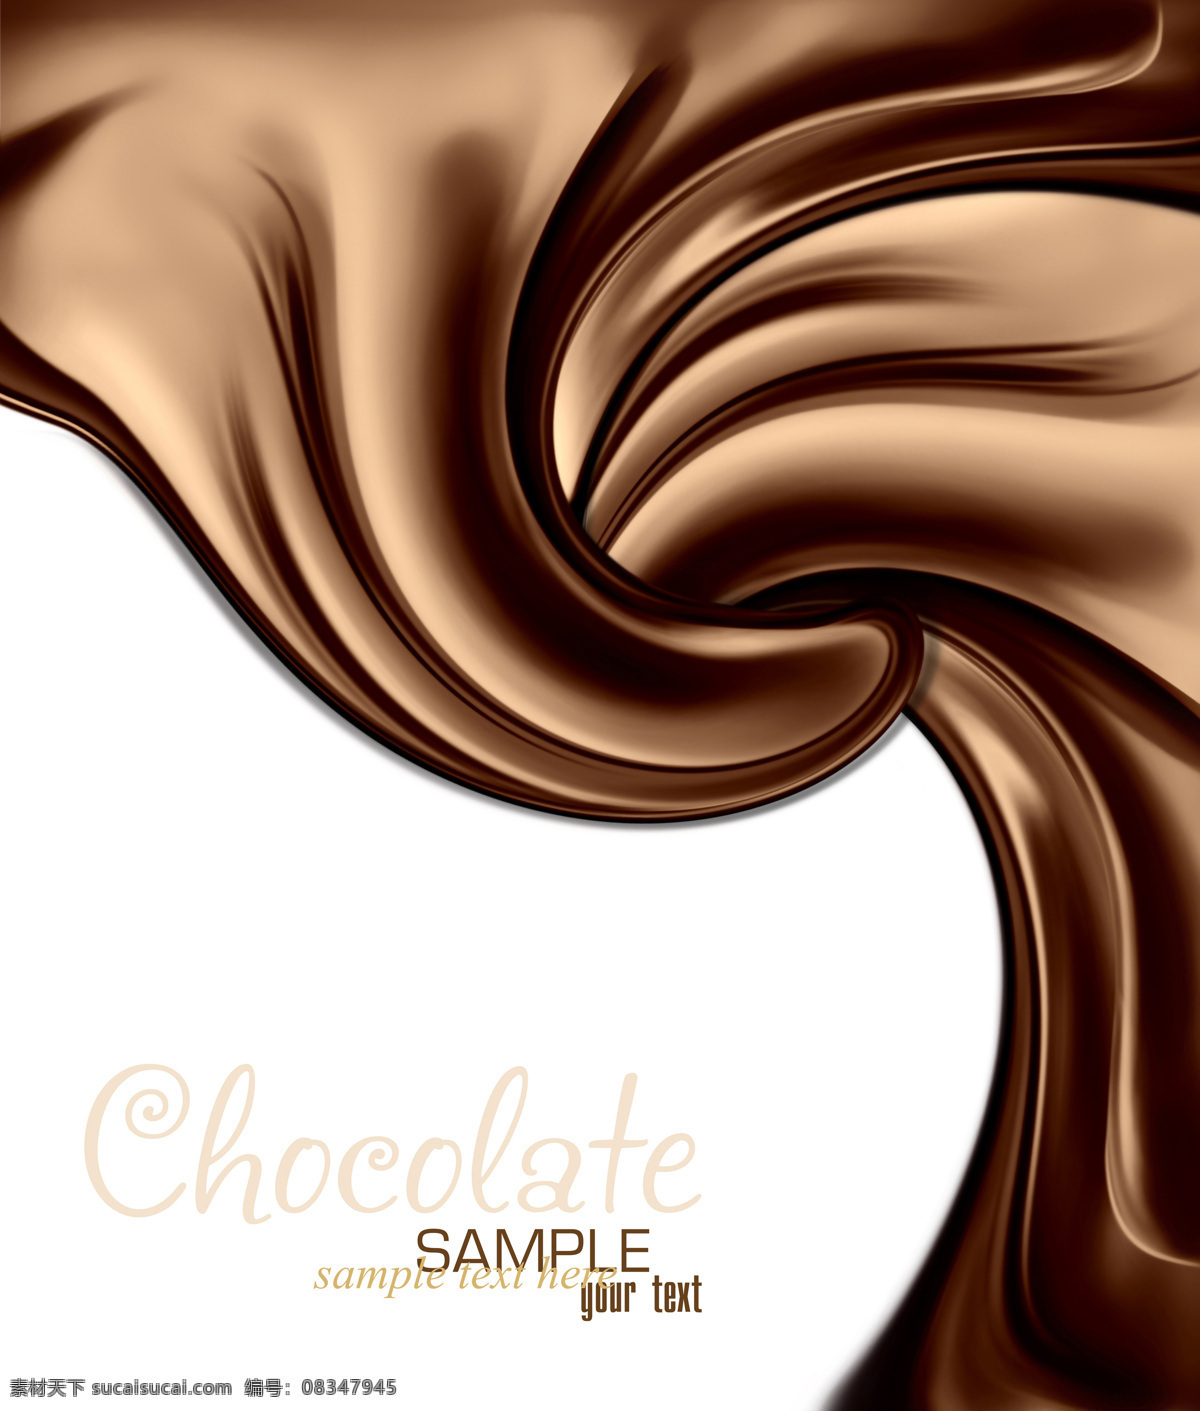 巧克力 动感巧克力 巧克力背景 巧克力酱 丝滑 朱古力 诱人的巧克力 液体 情人节美食 咖啡 西餐美食 生活百科 餐饮美食